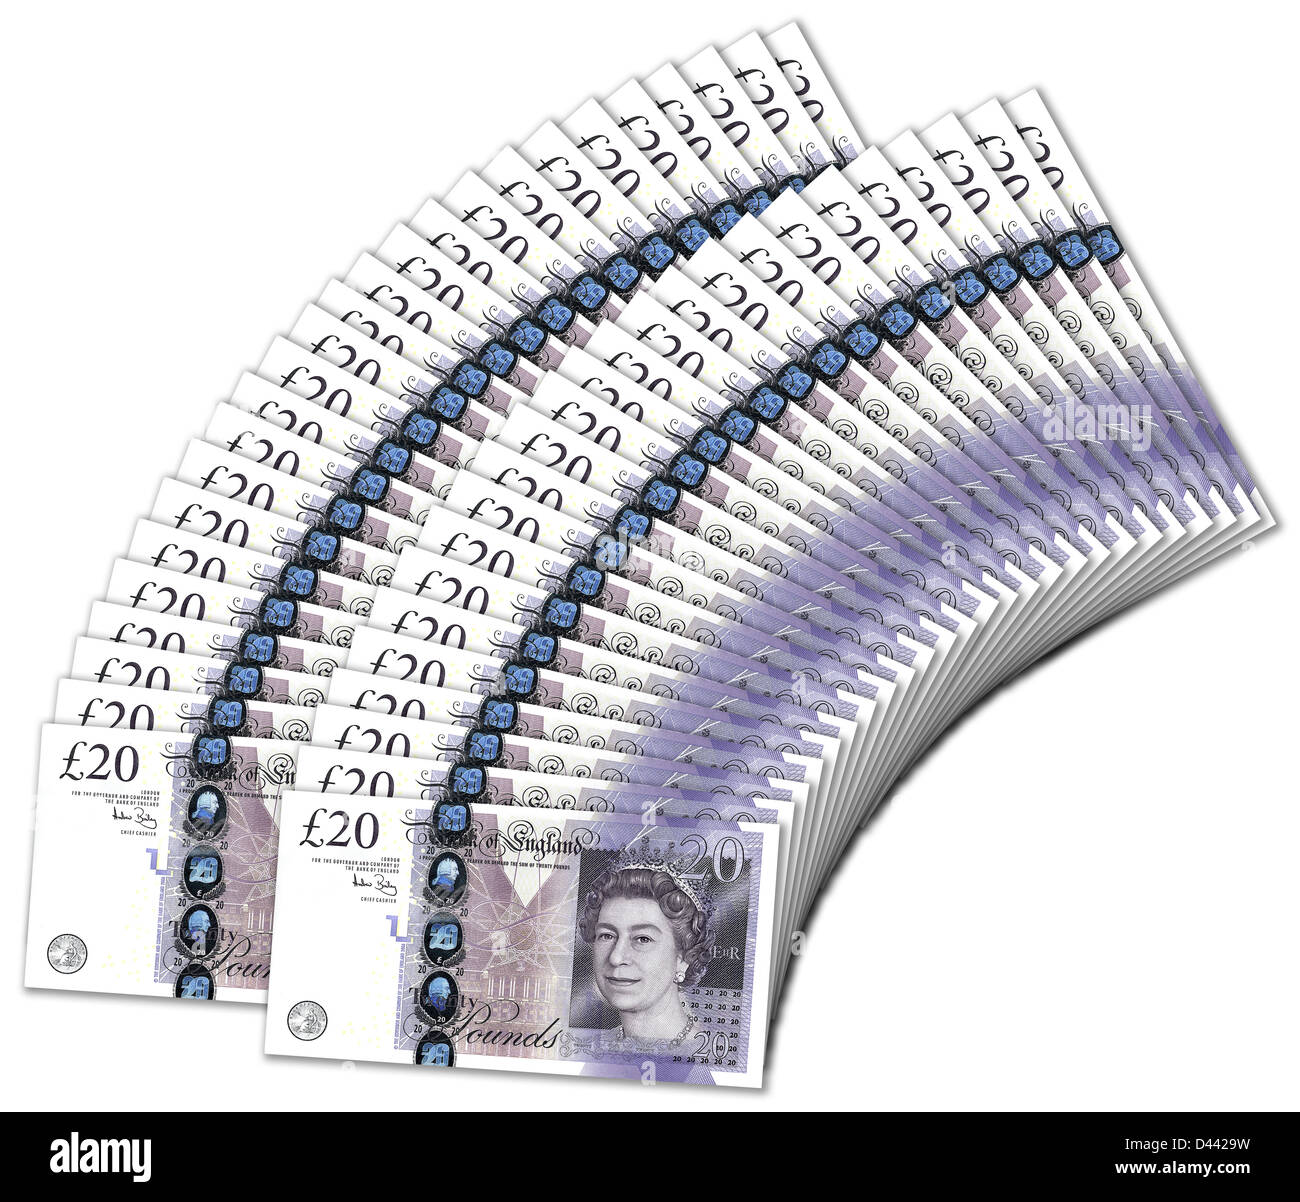 Zwanzig Pfund-Noten aufgefächert, Overlaping einander, in Höhe von insgesamt 1000 Pfund. Stockfoto